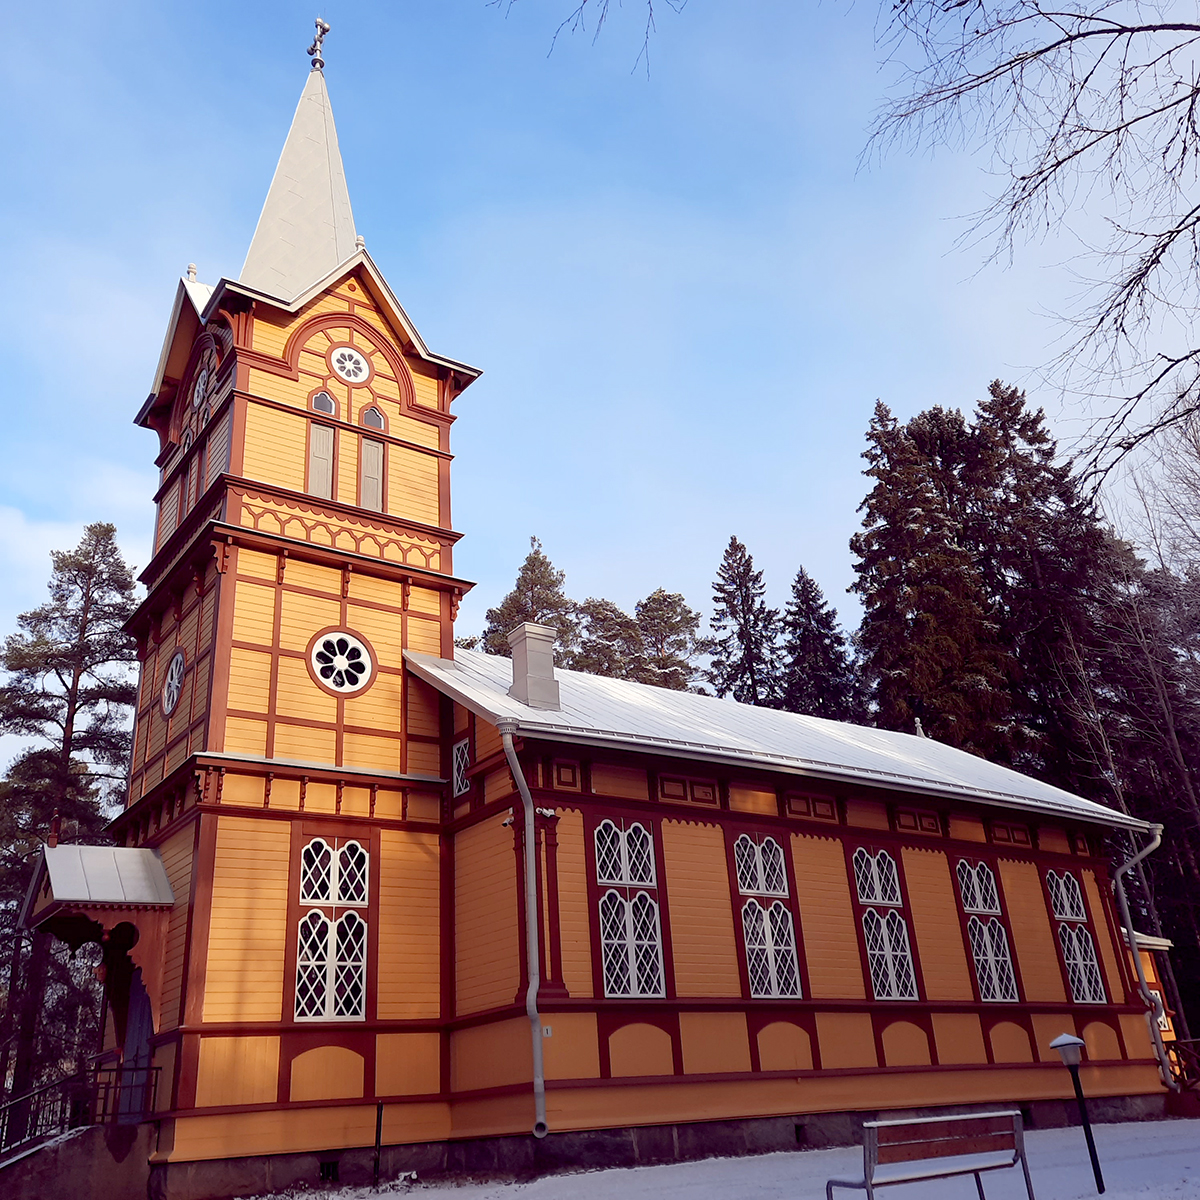 Kelta-ruskea vanha puukirkko, etuosassa torni, koristeelliset ikkunat.